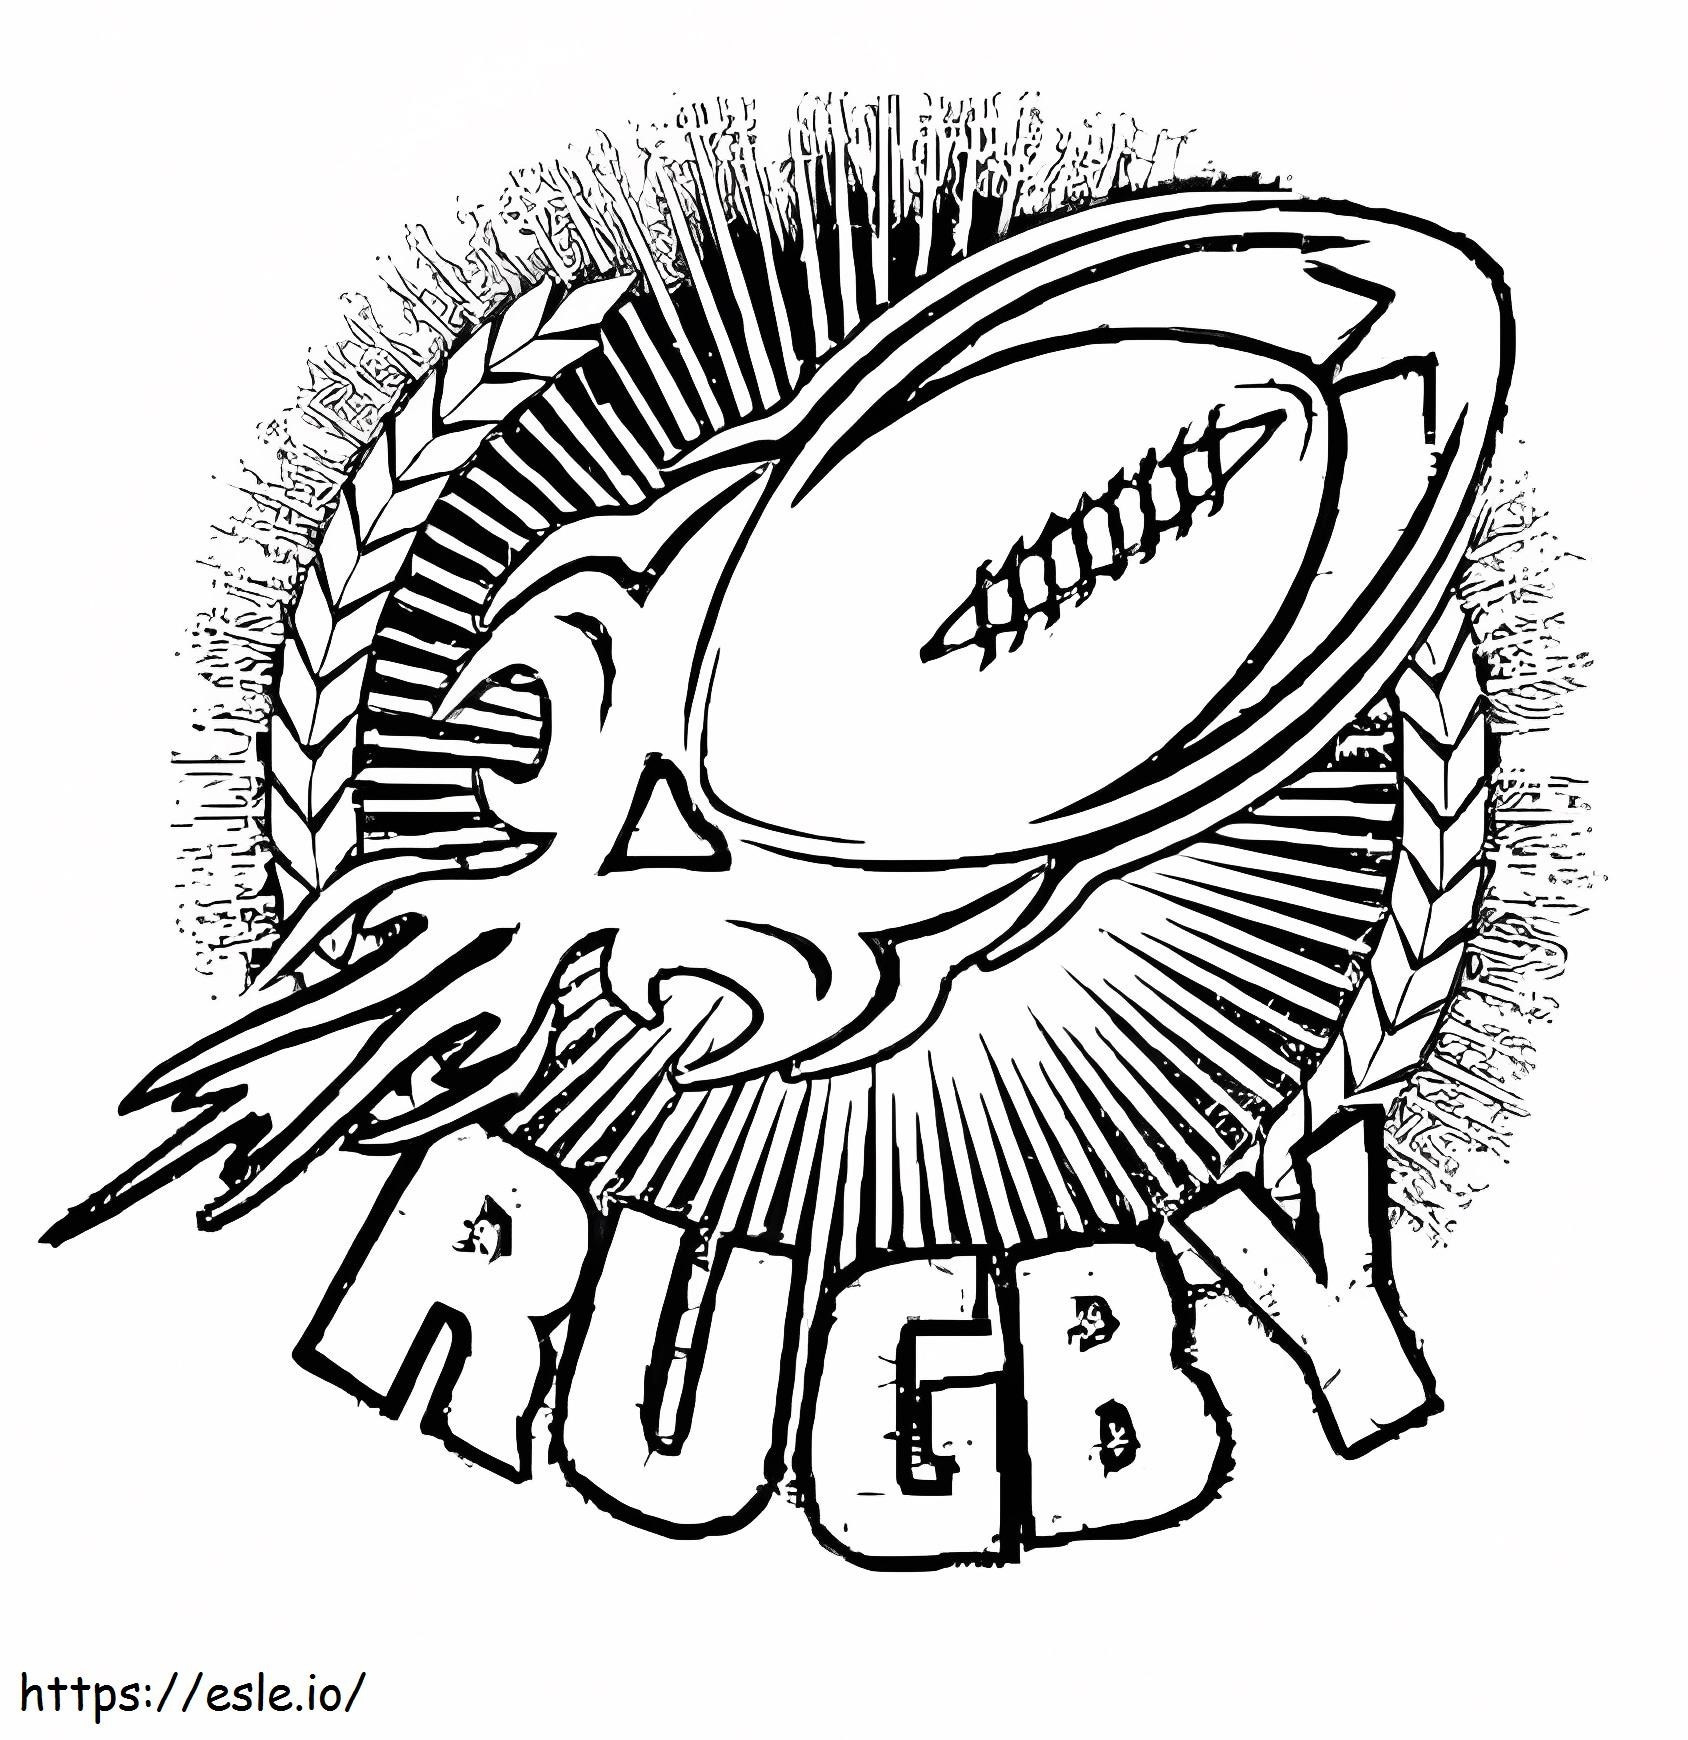 Coloriage Rugby gratuit à imprimer dessin